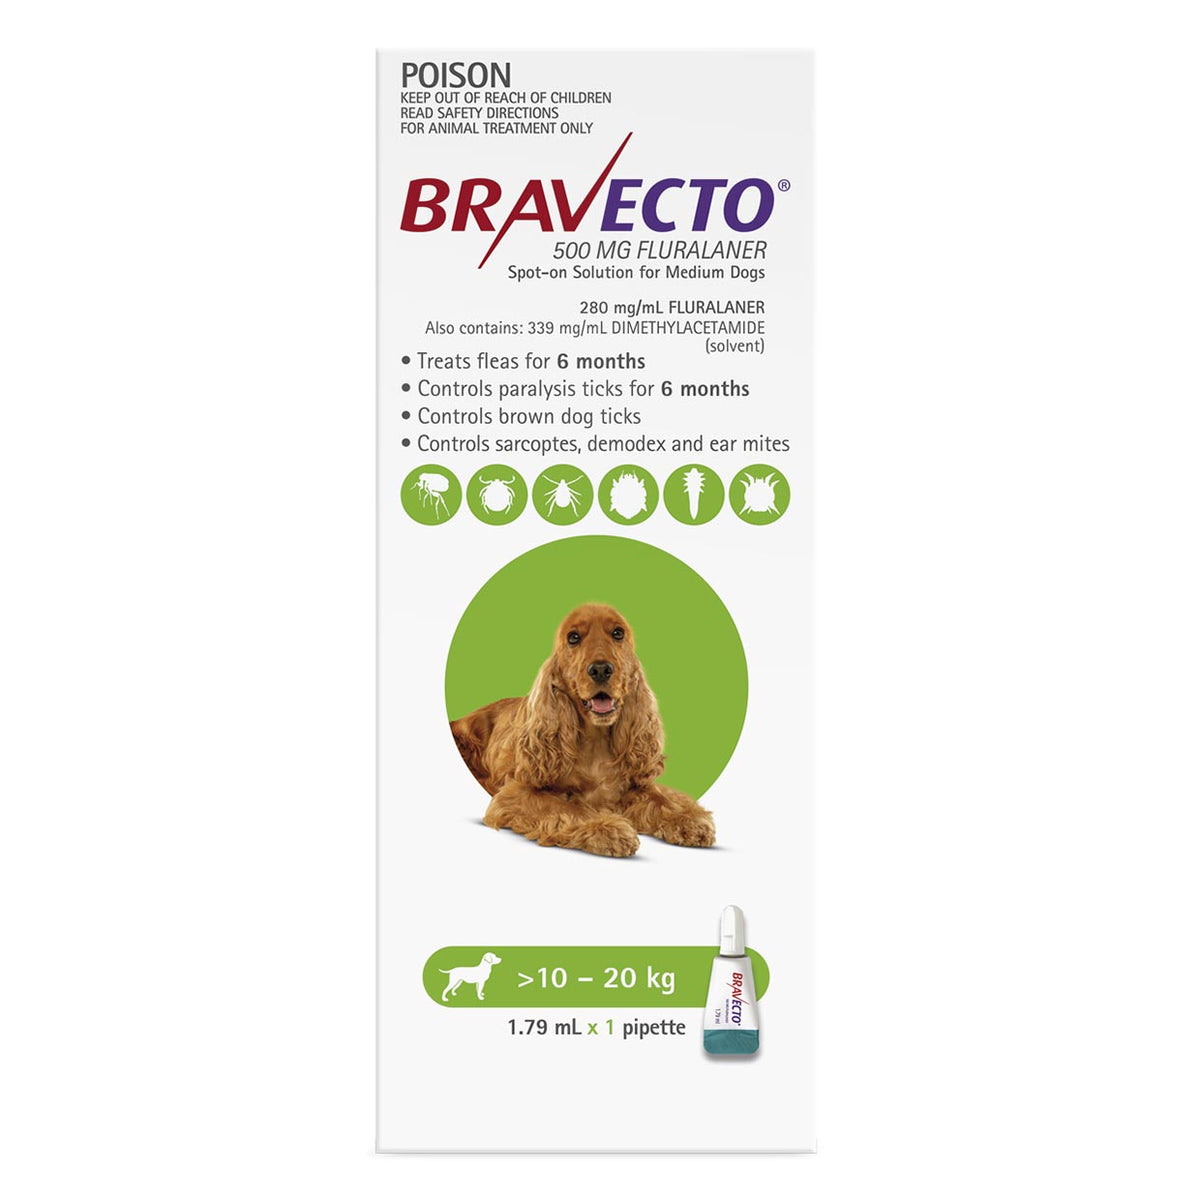 Bravecto Spot-on for Dogs 10kg-20kg (Green) - 2 Pack Value Bundle